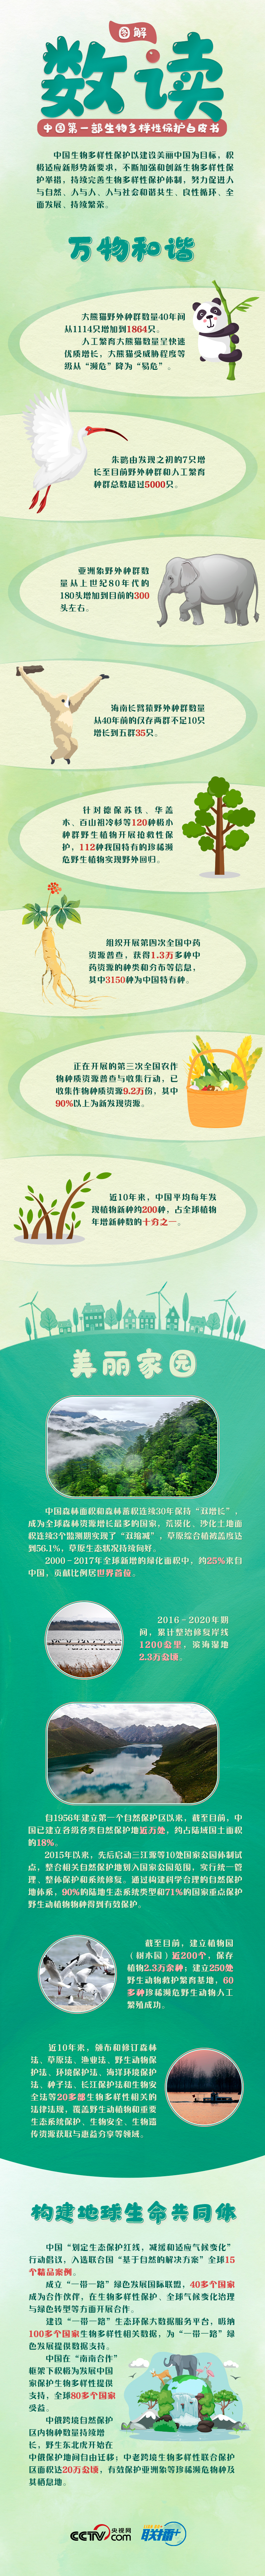 联播+ | COP15来了！中国首发新领域白皮书 惊喜多看点足